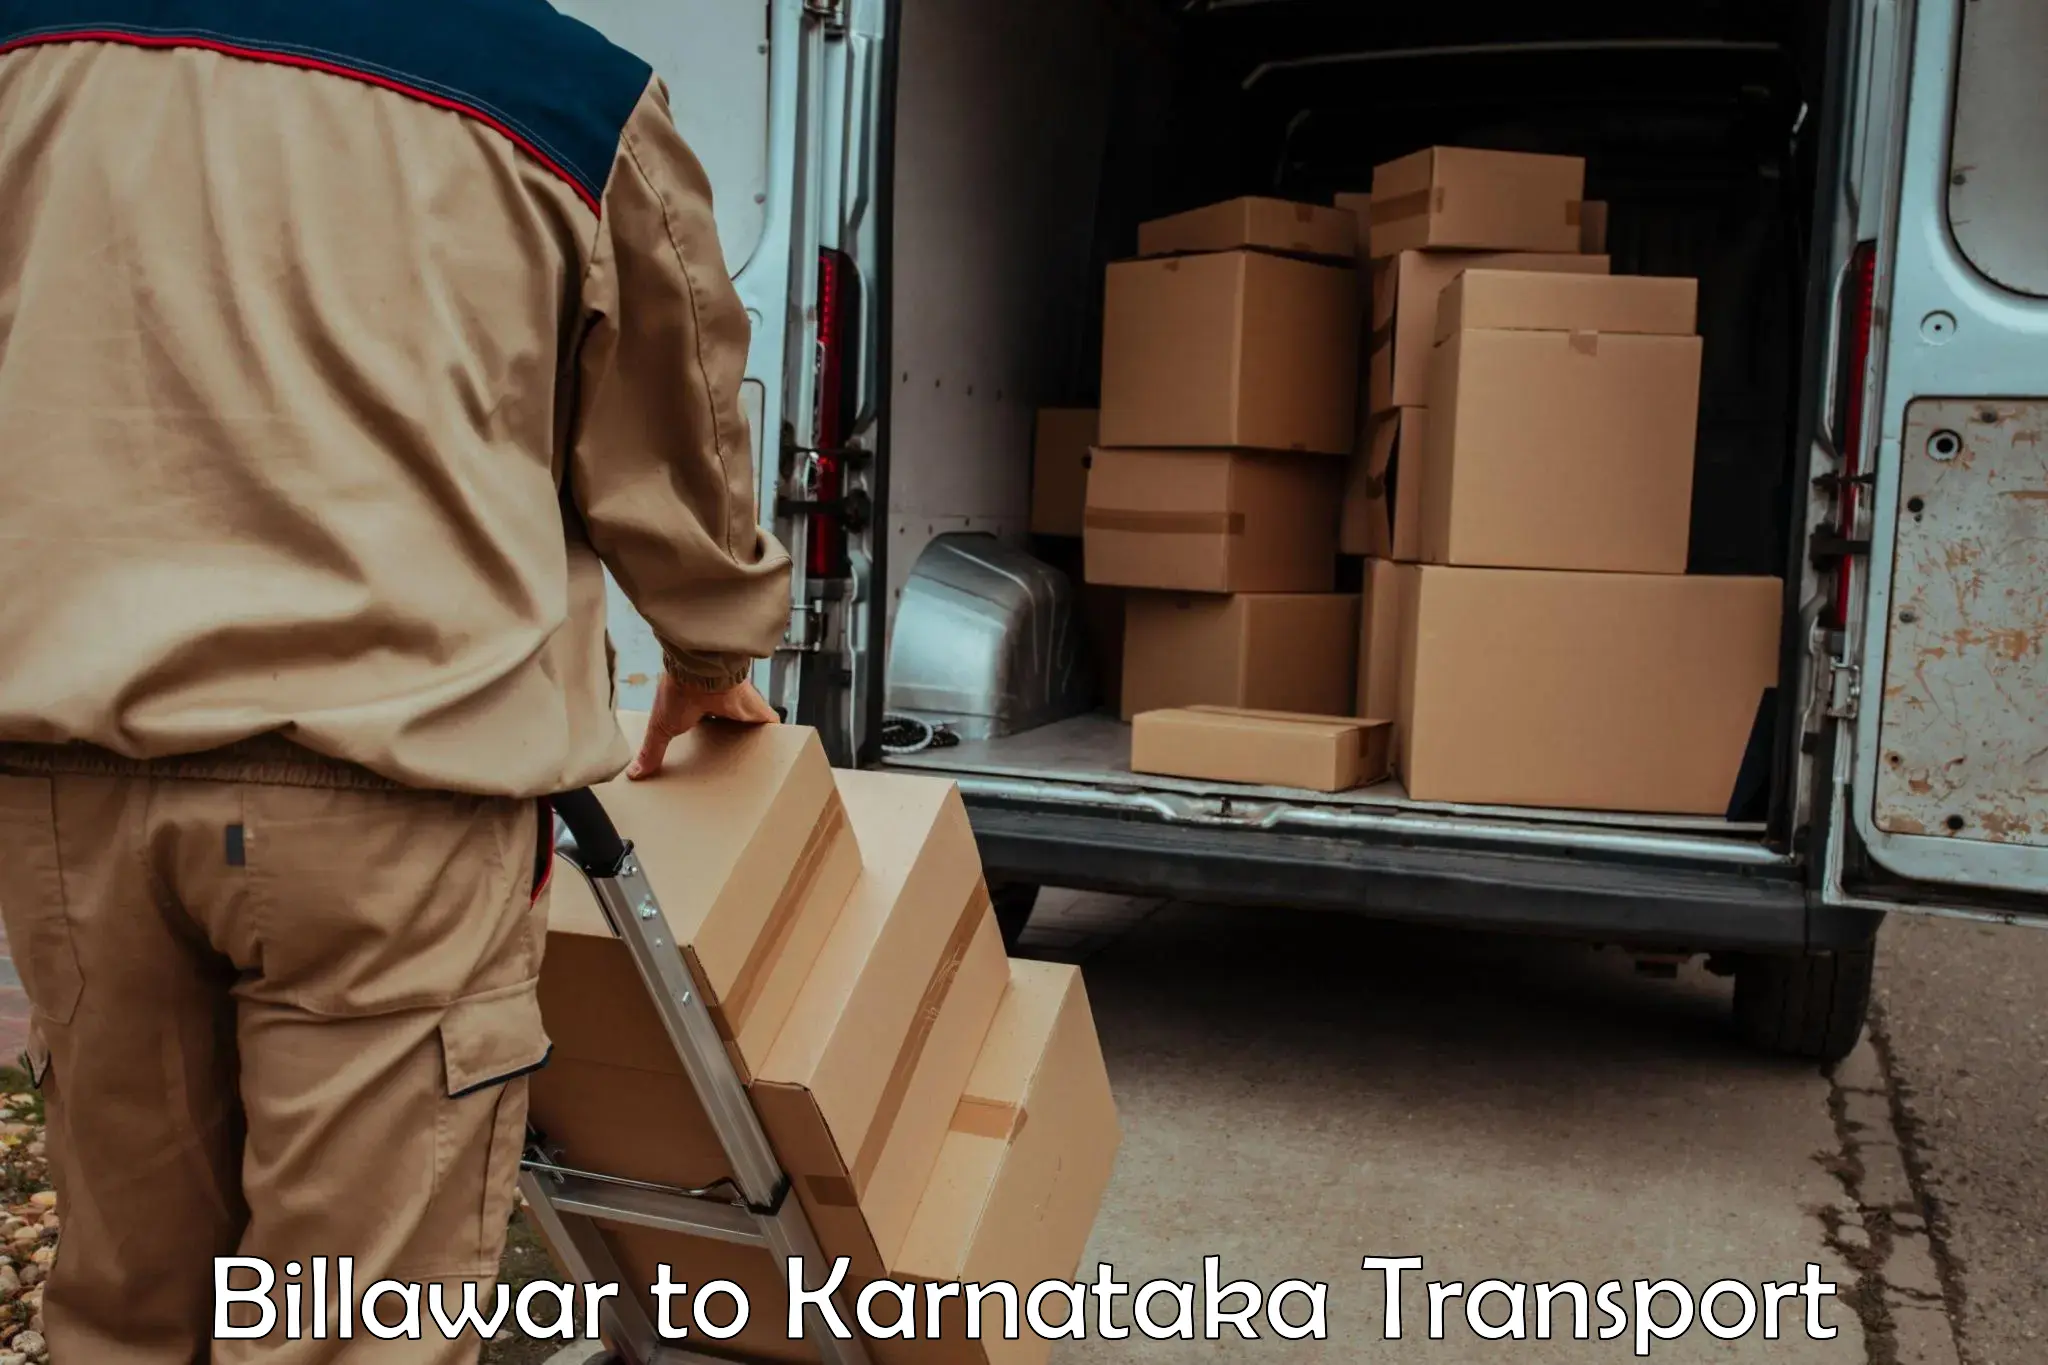 Daily transport service Billawar to Karnataka